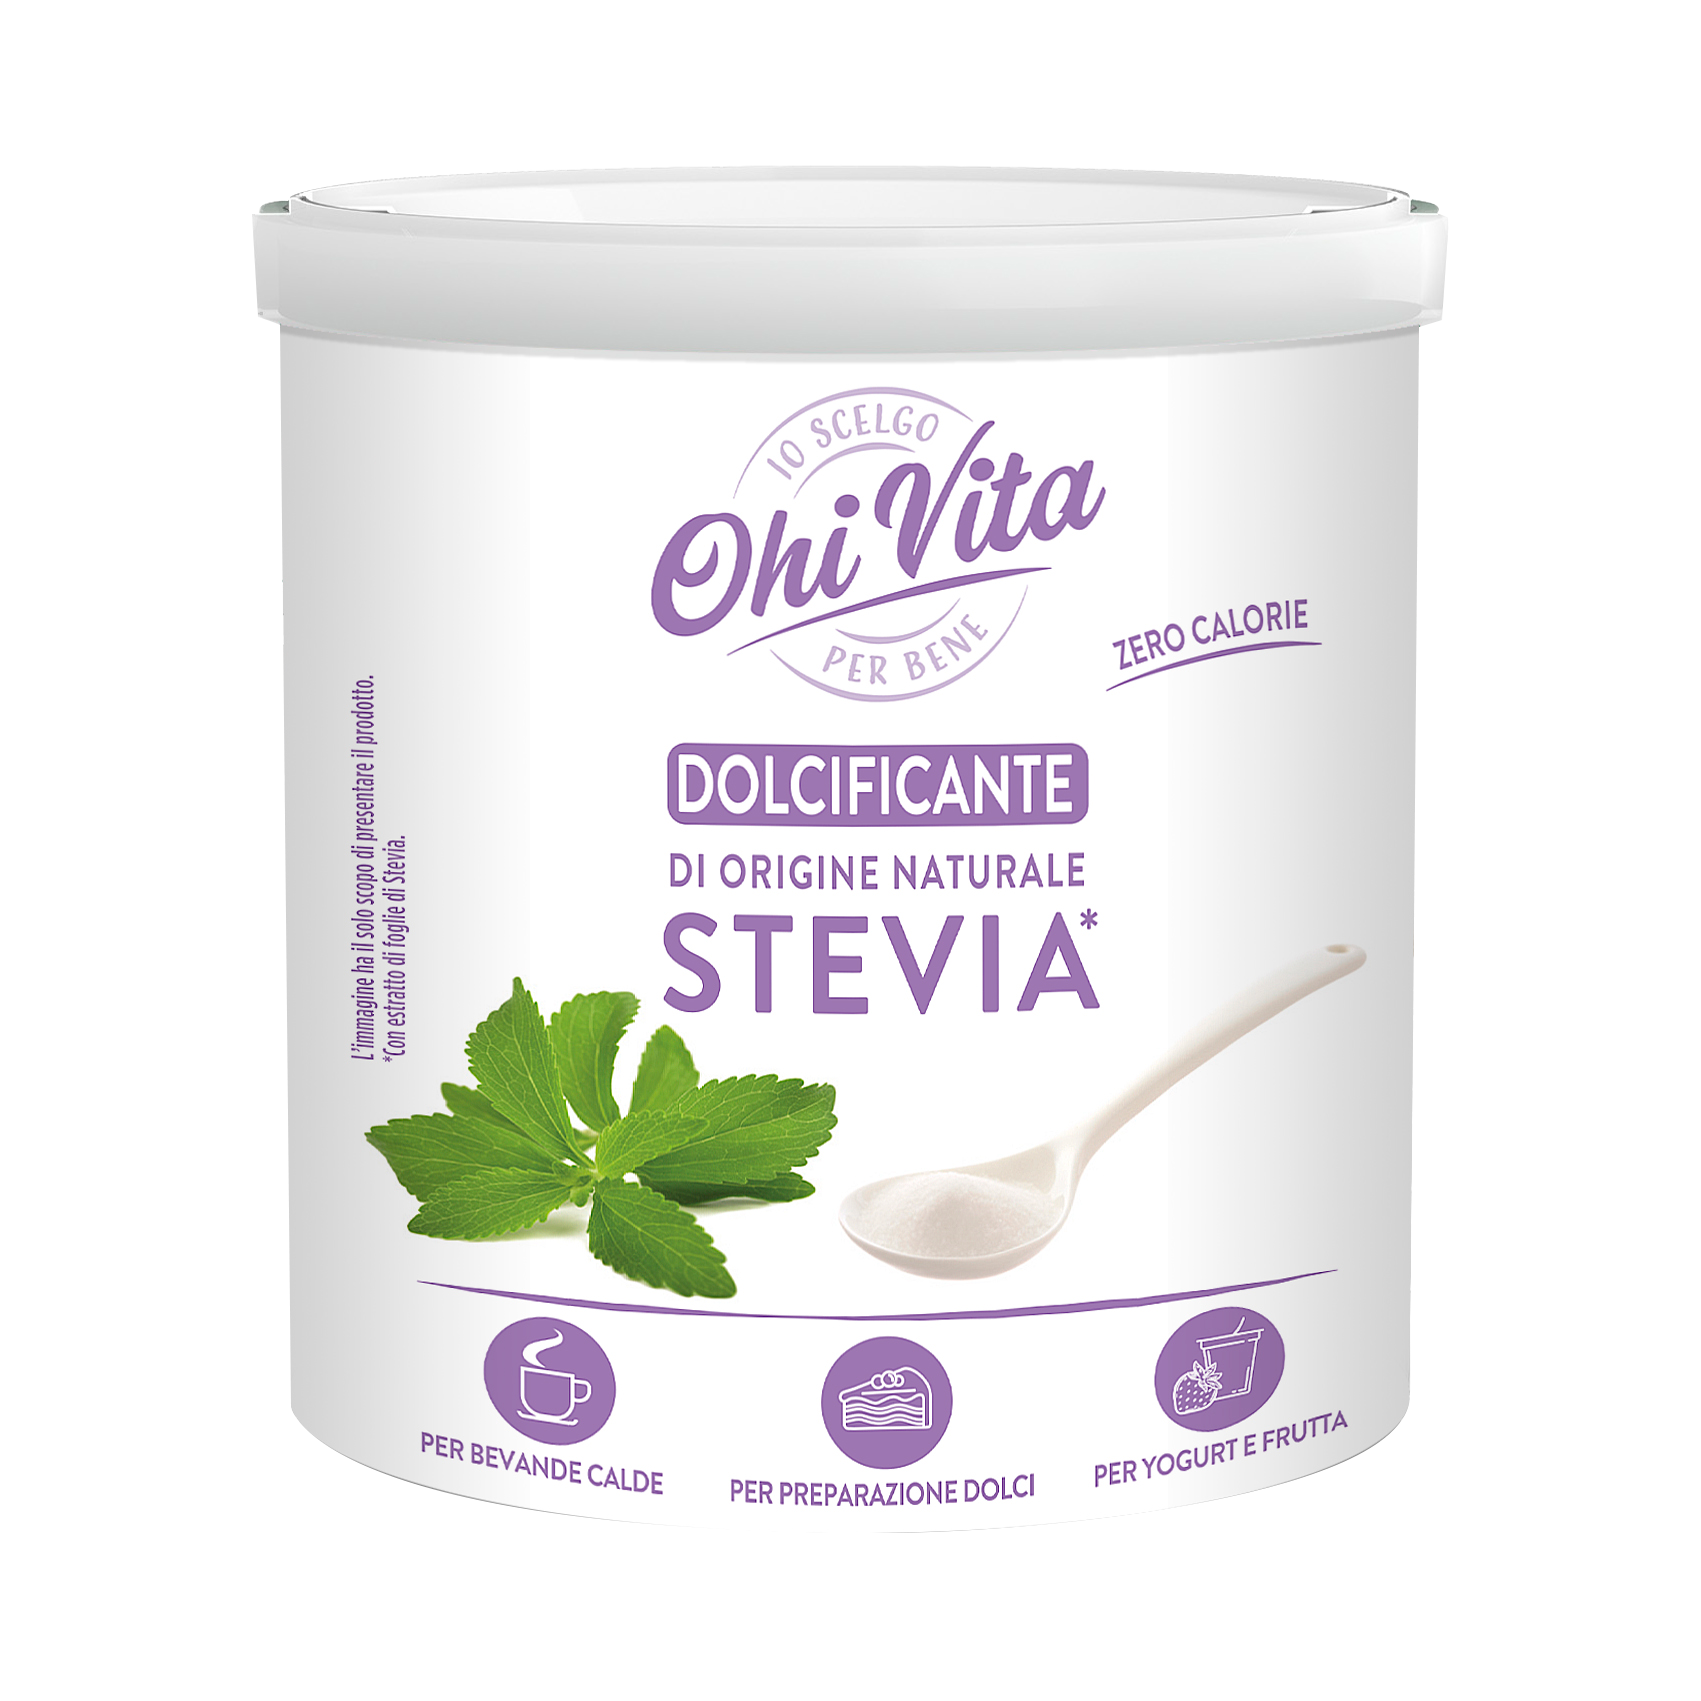 Stevia Box